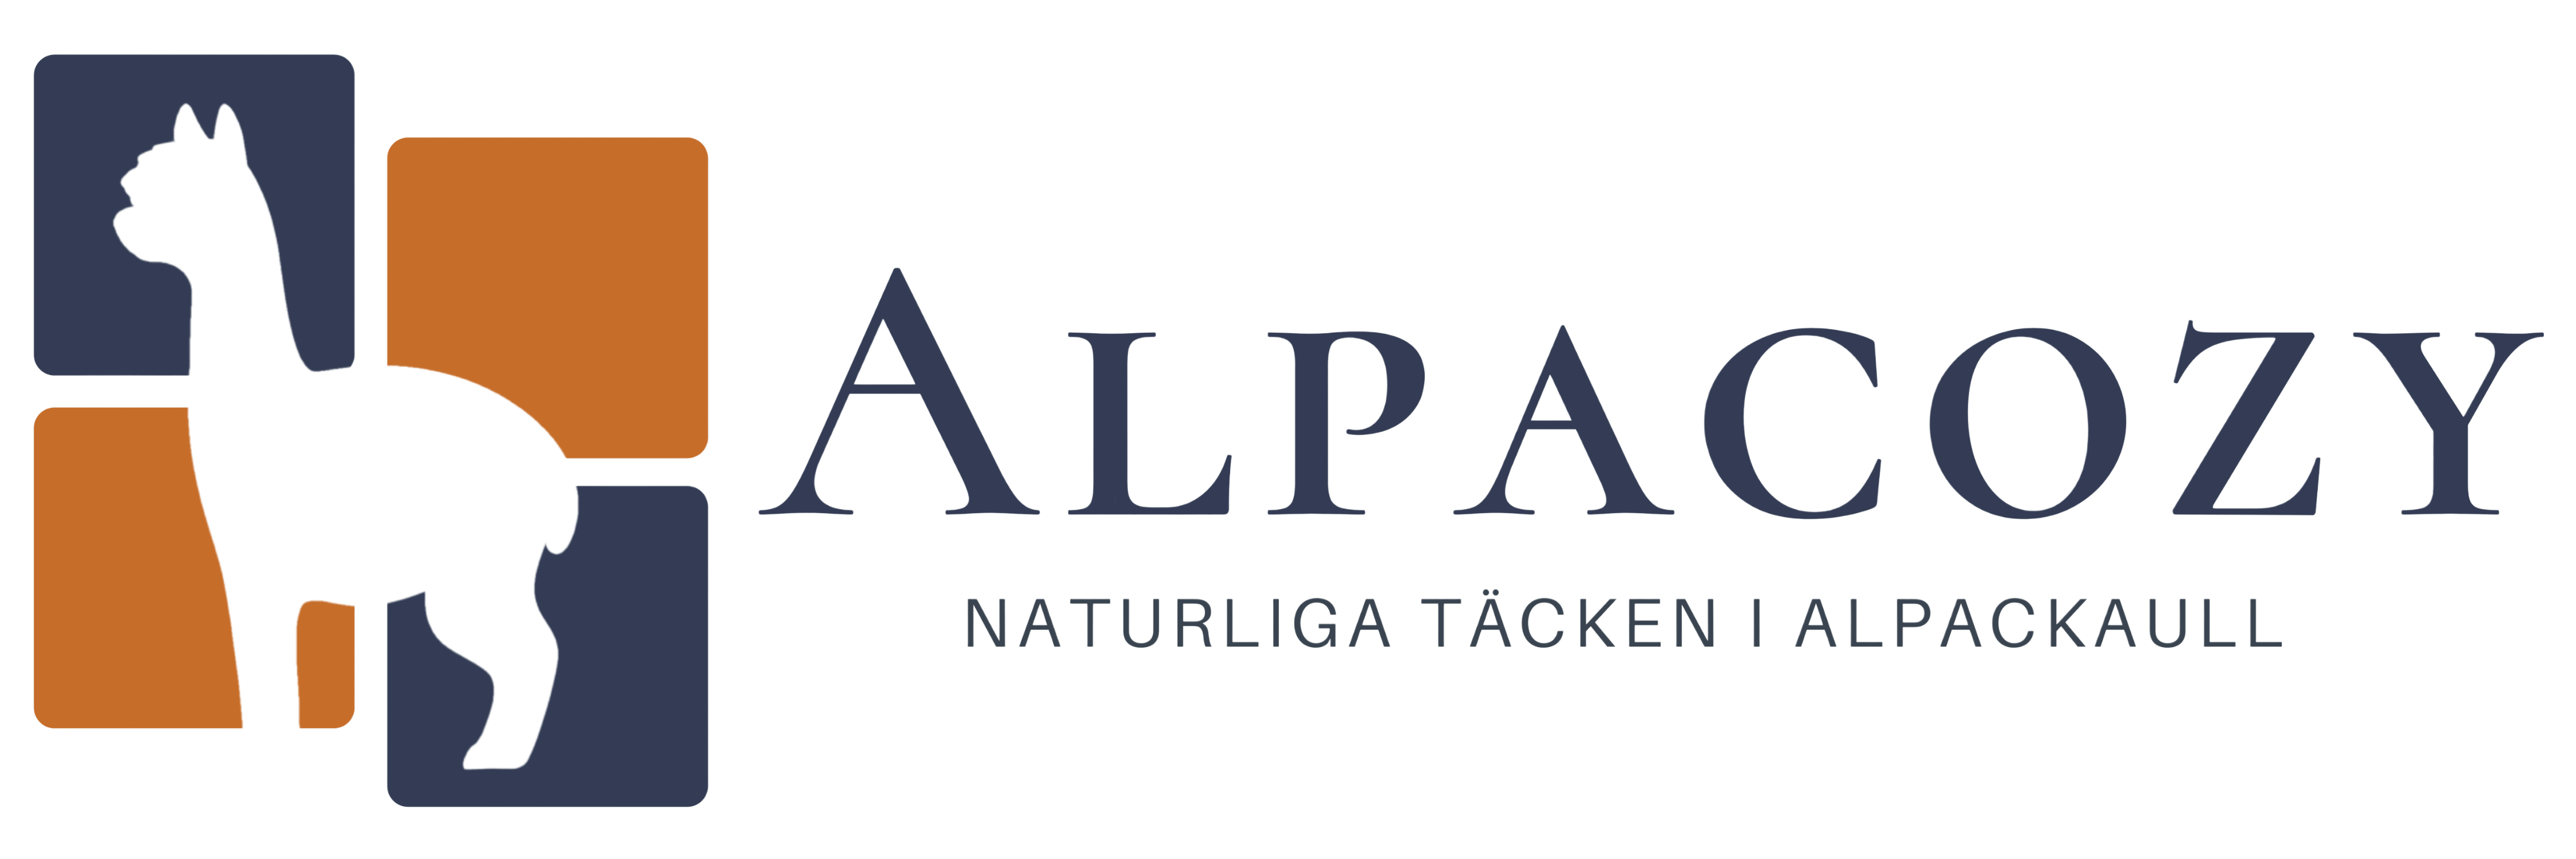 Alpacozy täcken i alpackaull